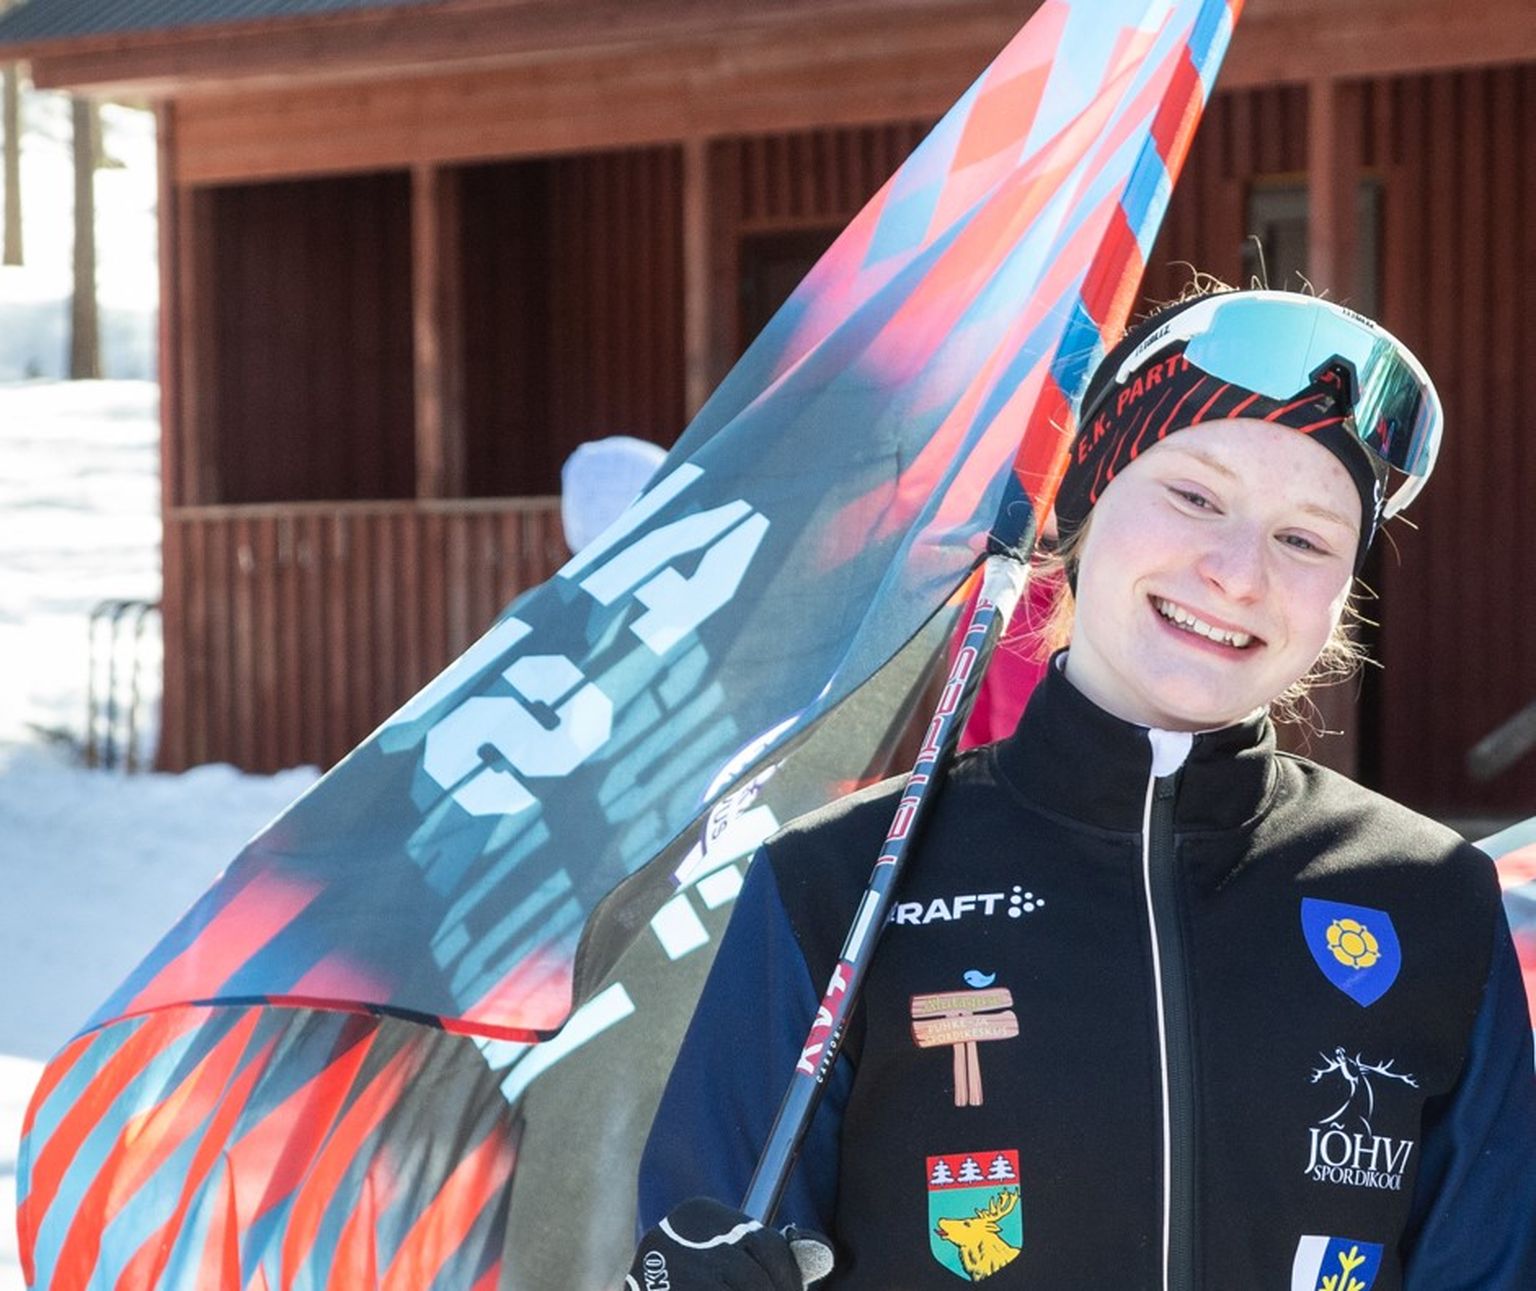 Херта Раяс, которая высоко держит флаг лыжного клуба Алутагузе, на следующей неделе может войти в историю эстонских лыжных гонок как самая юная эстонская лыжница, стартовавшая на этапе Кубка мира.